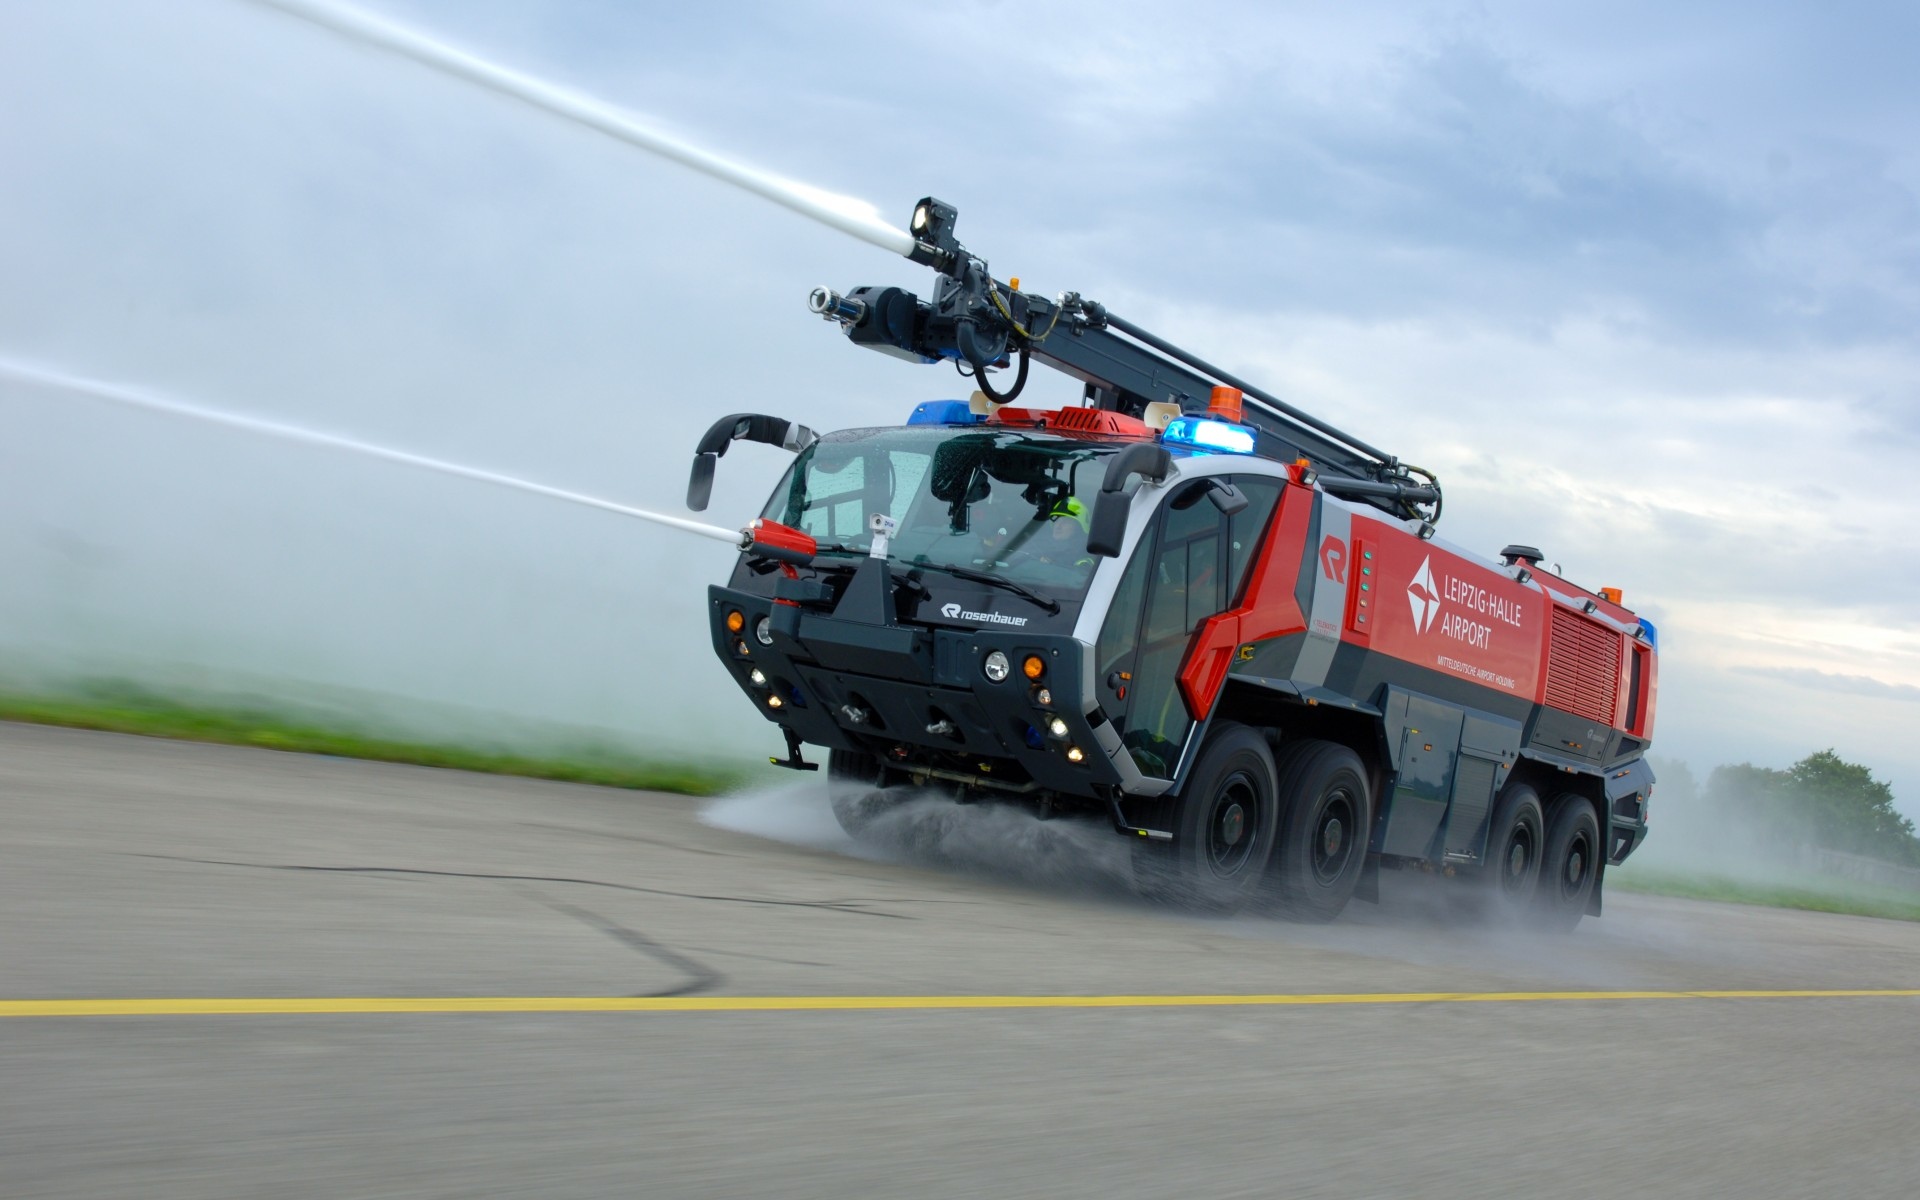 Пожарная машина аэропорта Rosenbauer Panther